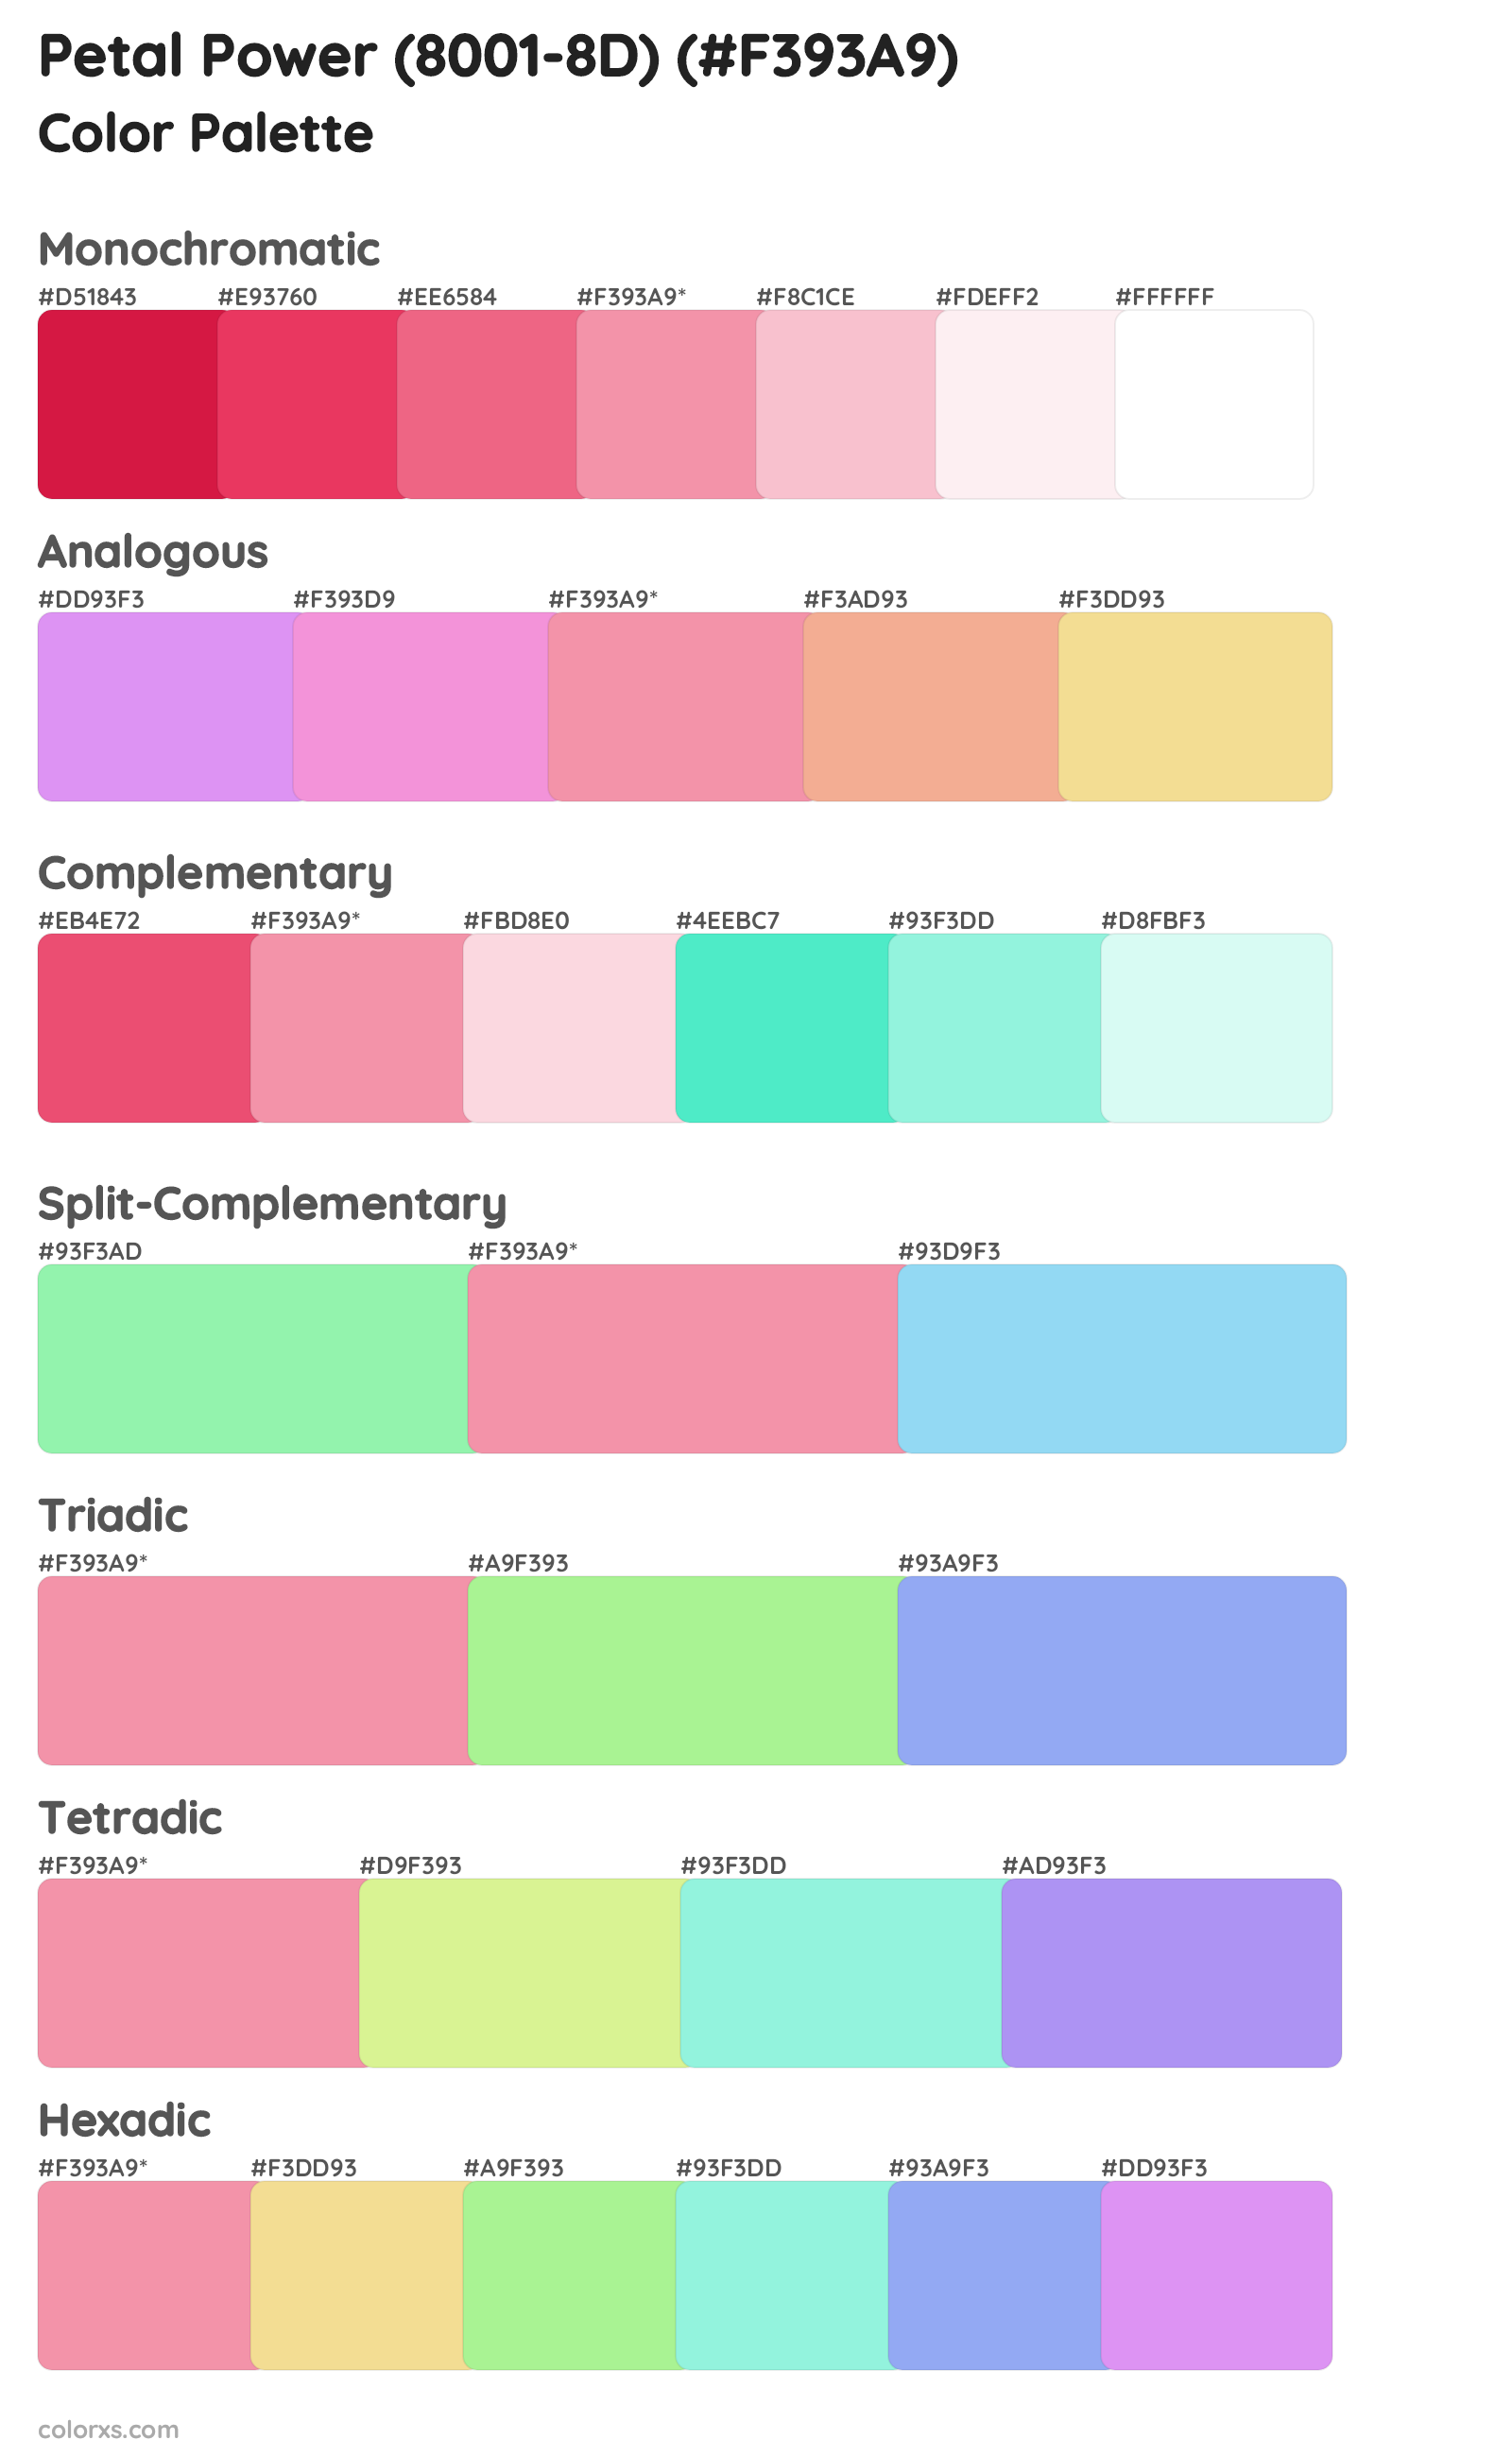 Petal Power (8001-8D) Color Scheme Palettes